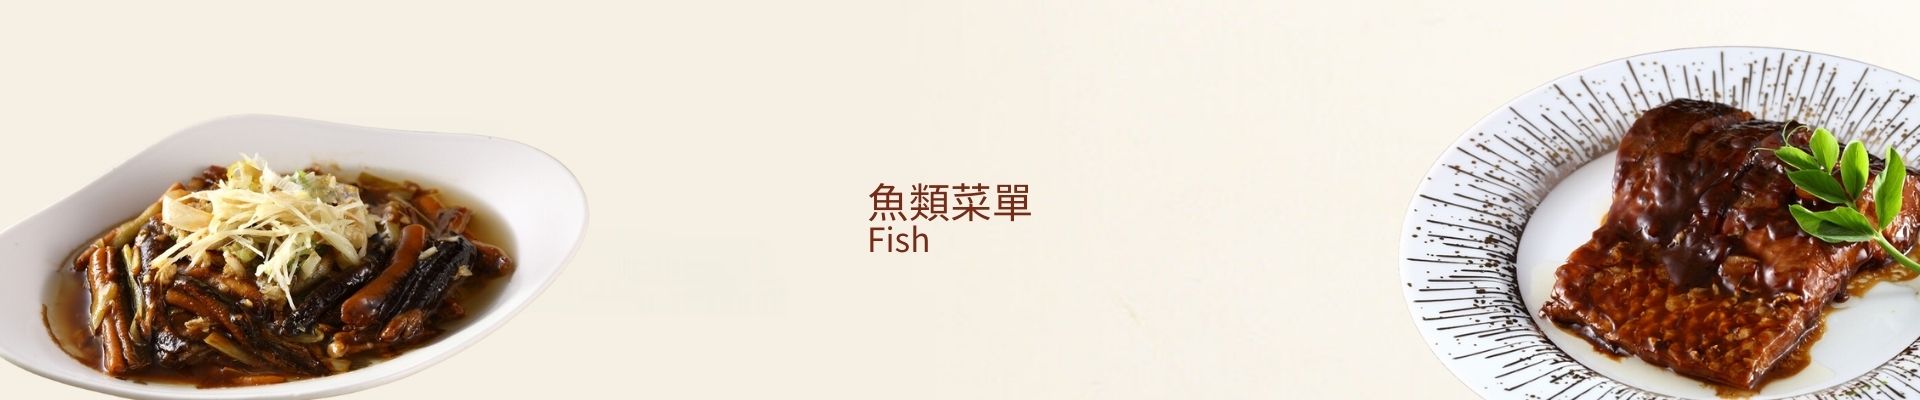 魚類菜單